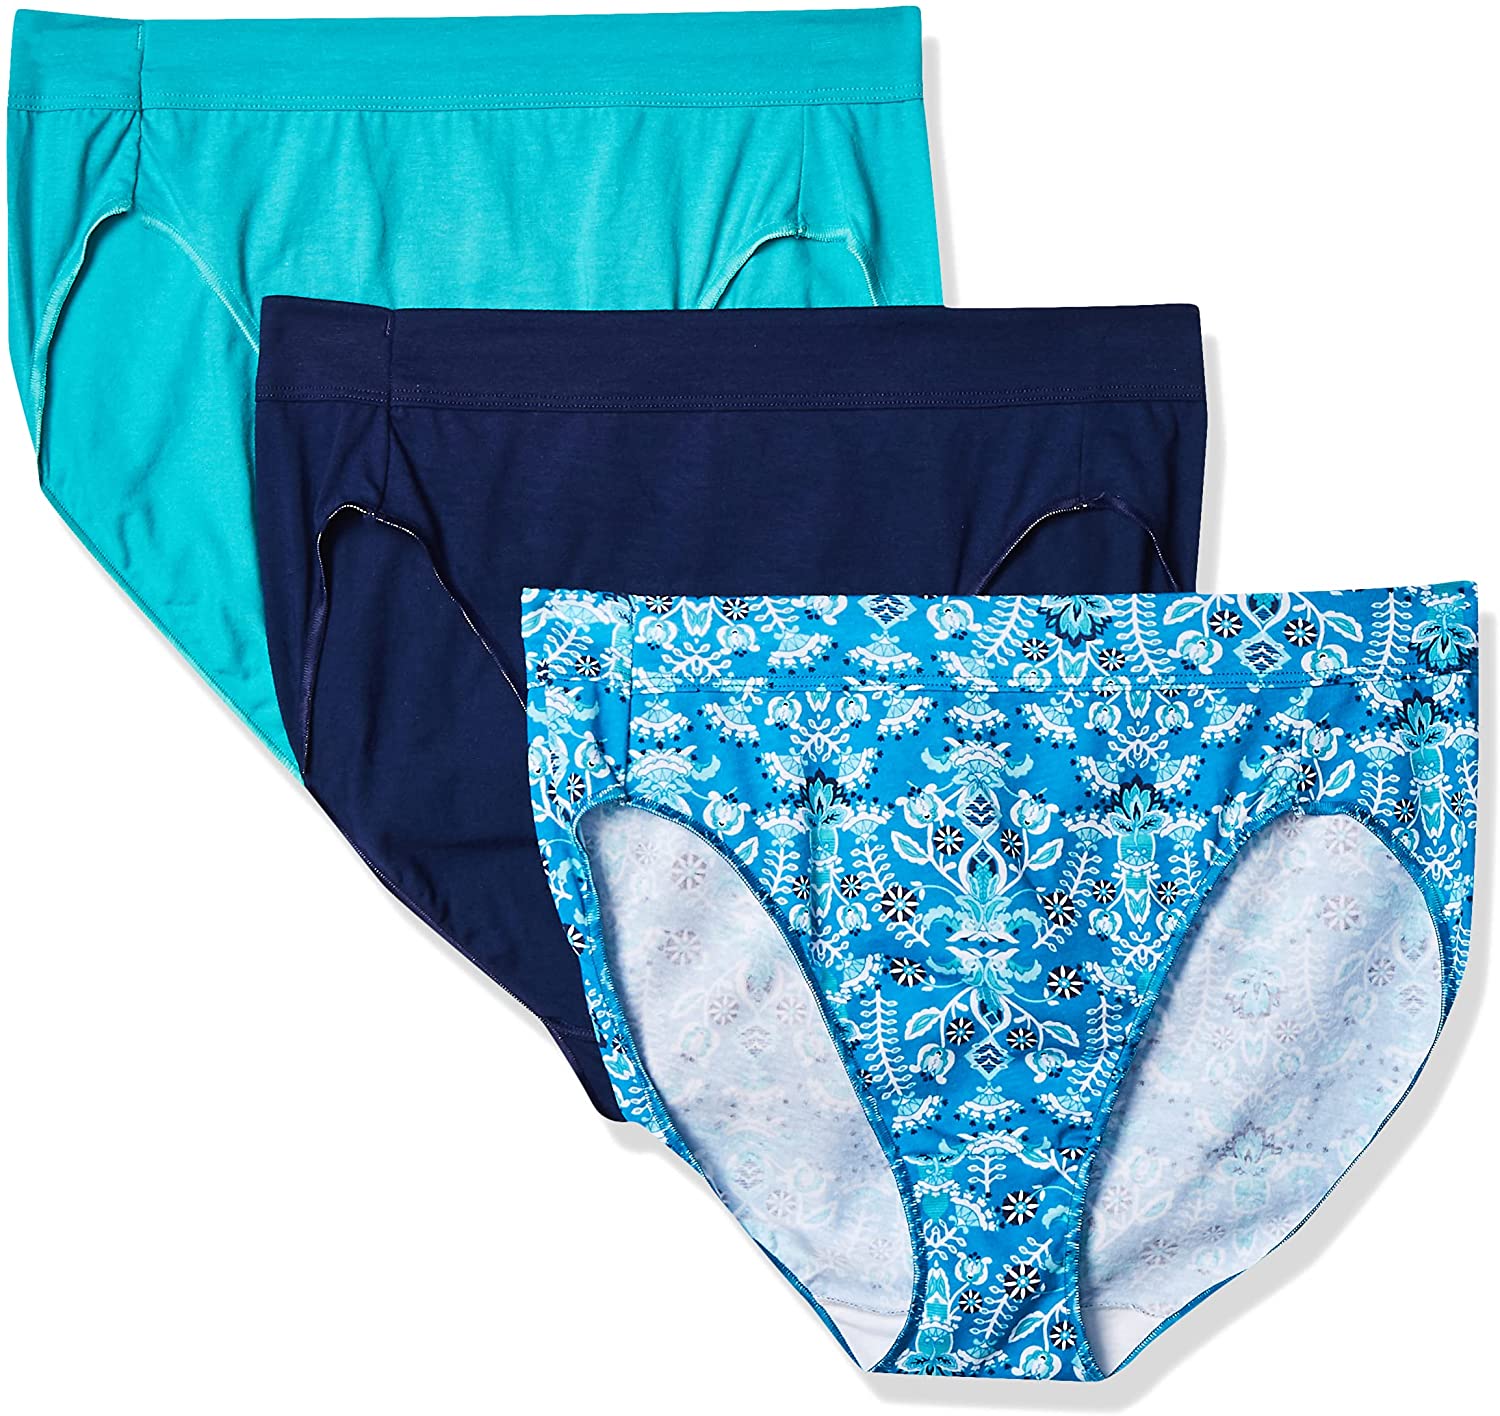 Hanes Women's Constant Comfort X-Temp Hipster Panties 3-Pack